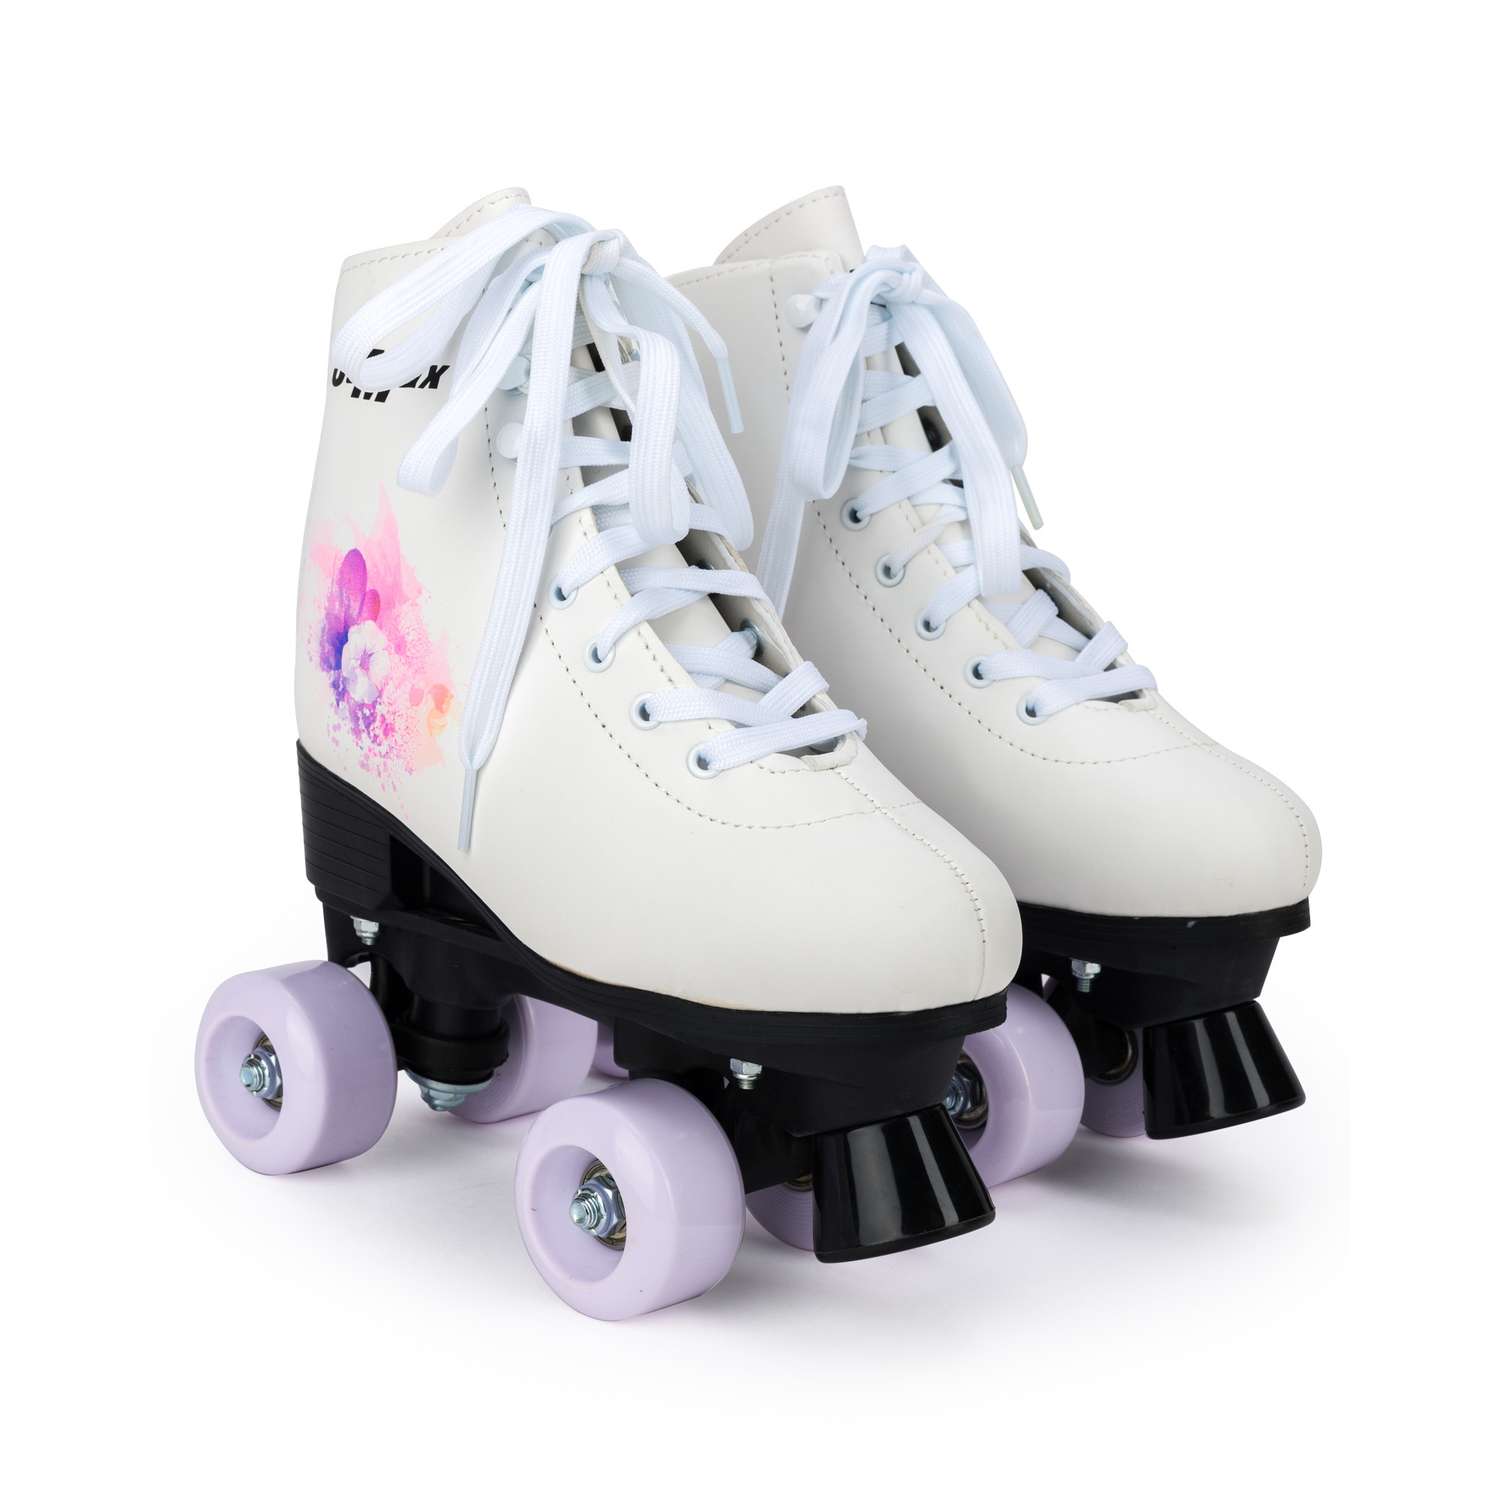 Роликовые коньки SXRide Roller skate YXSKT04WPUR белые с фиолетово-розовым орнаментом 31-34 - фото 1